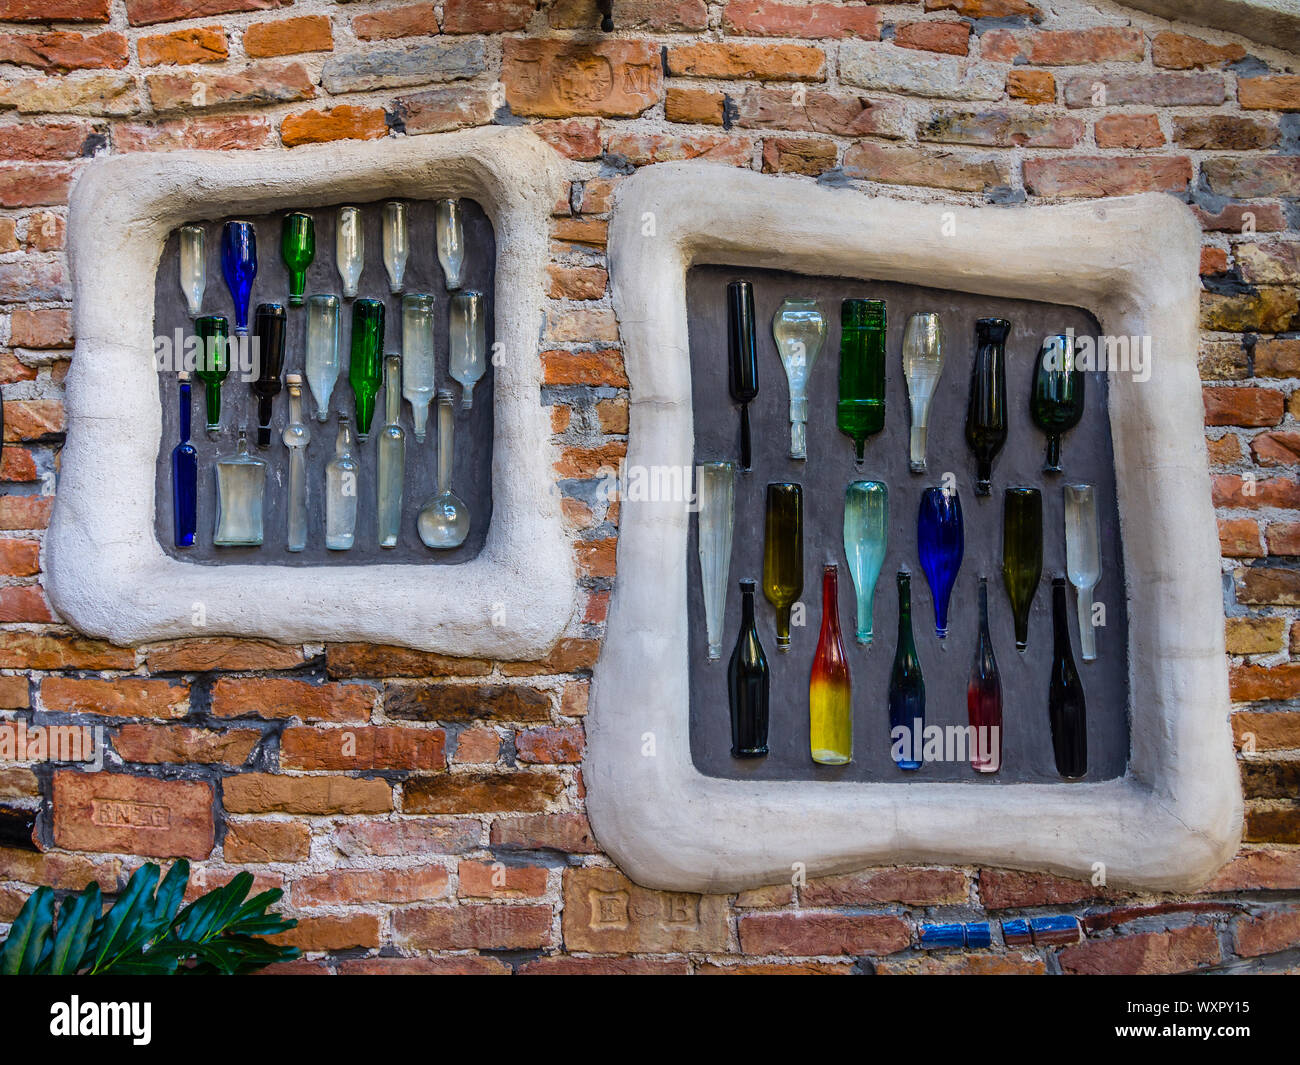 Mis en bouteilles au mur Kunst Haus Wien - Musée Hundertwasser, Vienne, Autriche. Banque D'Images